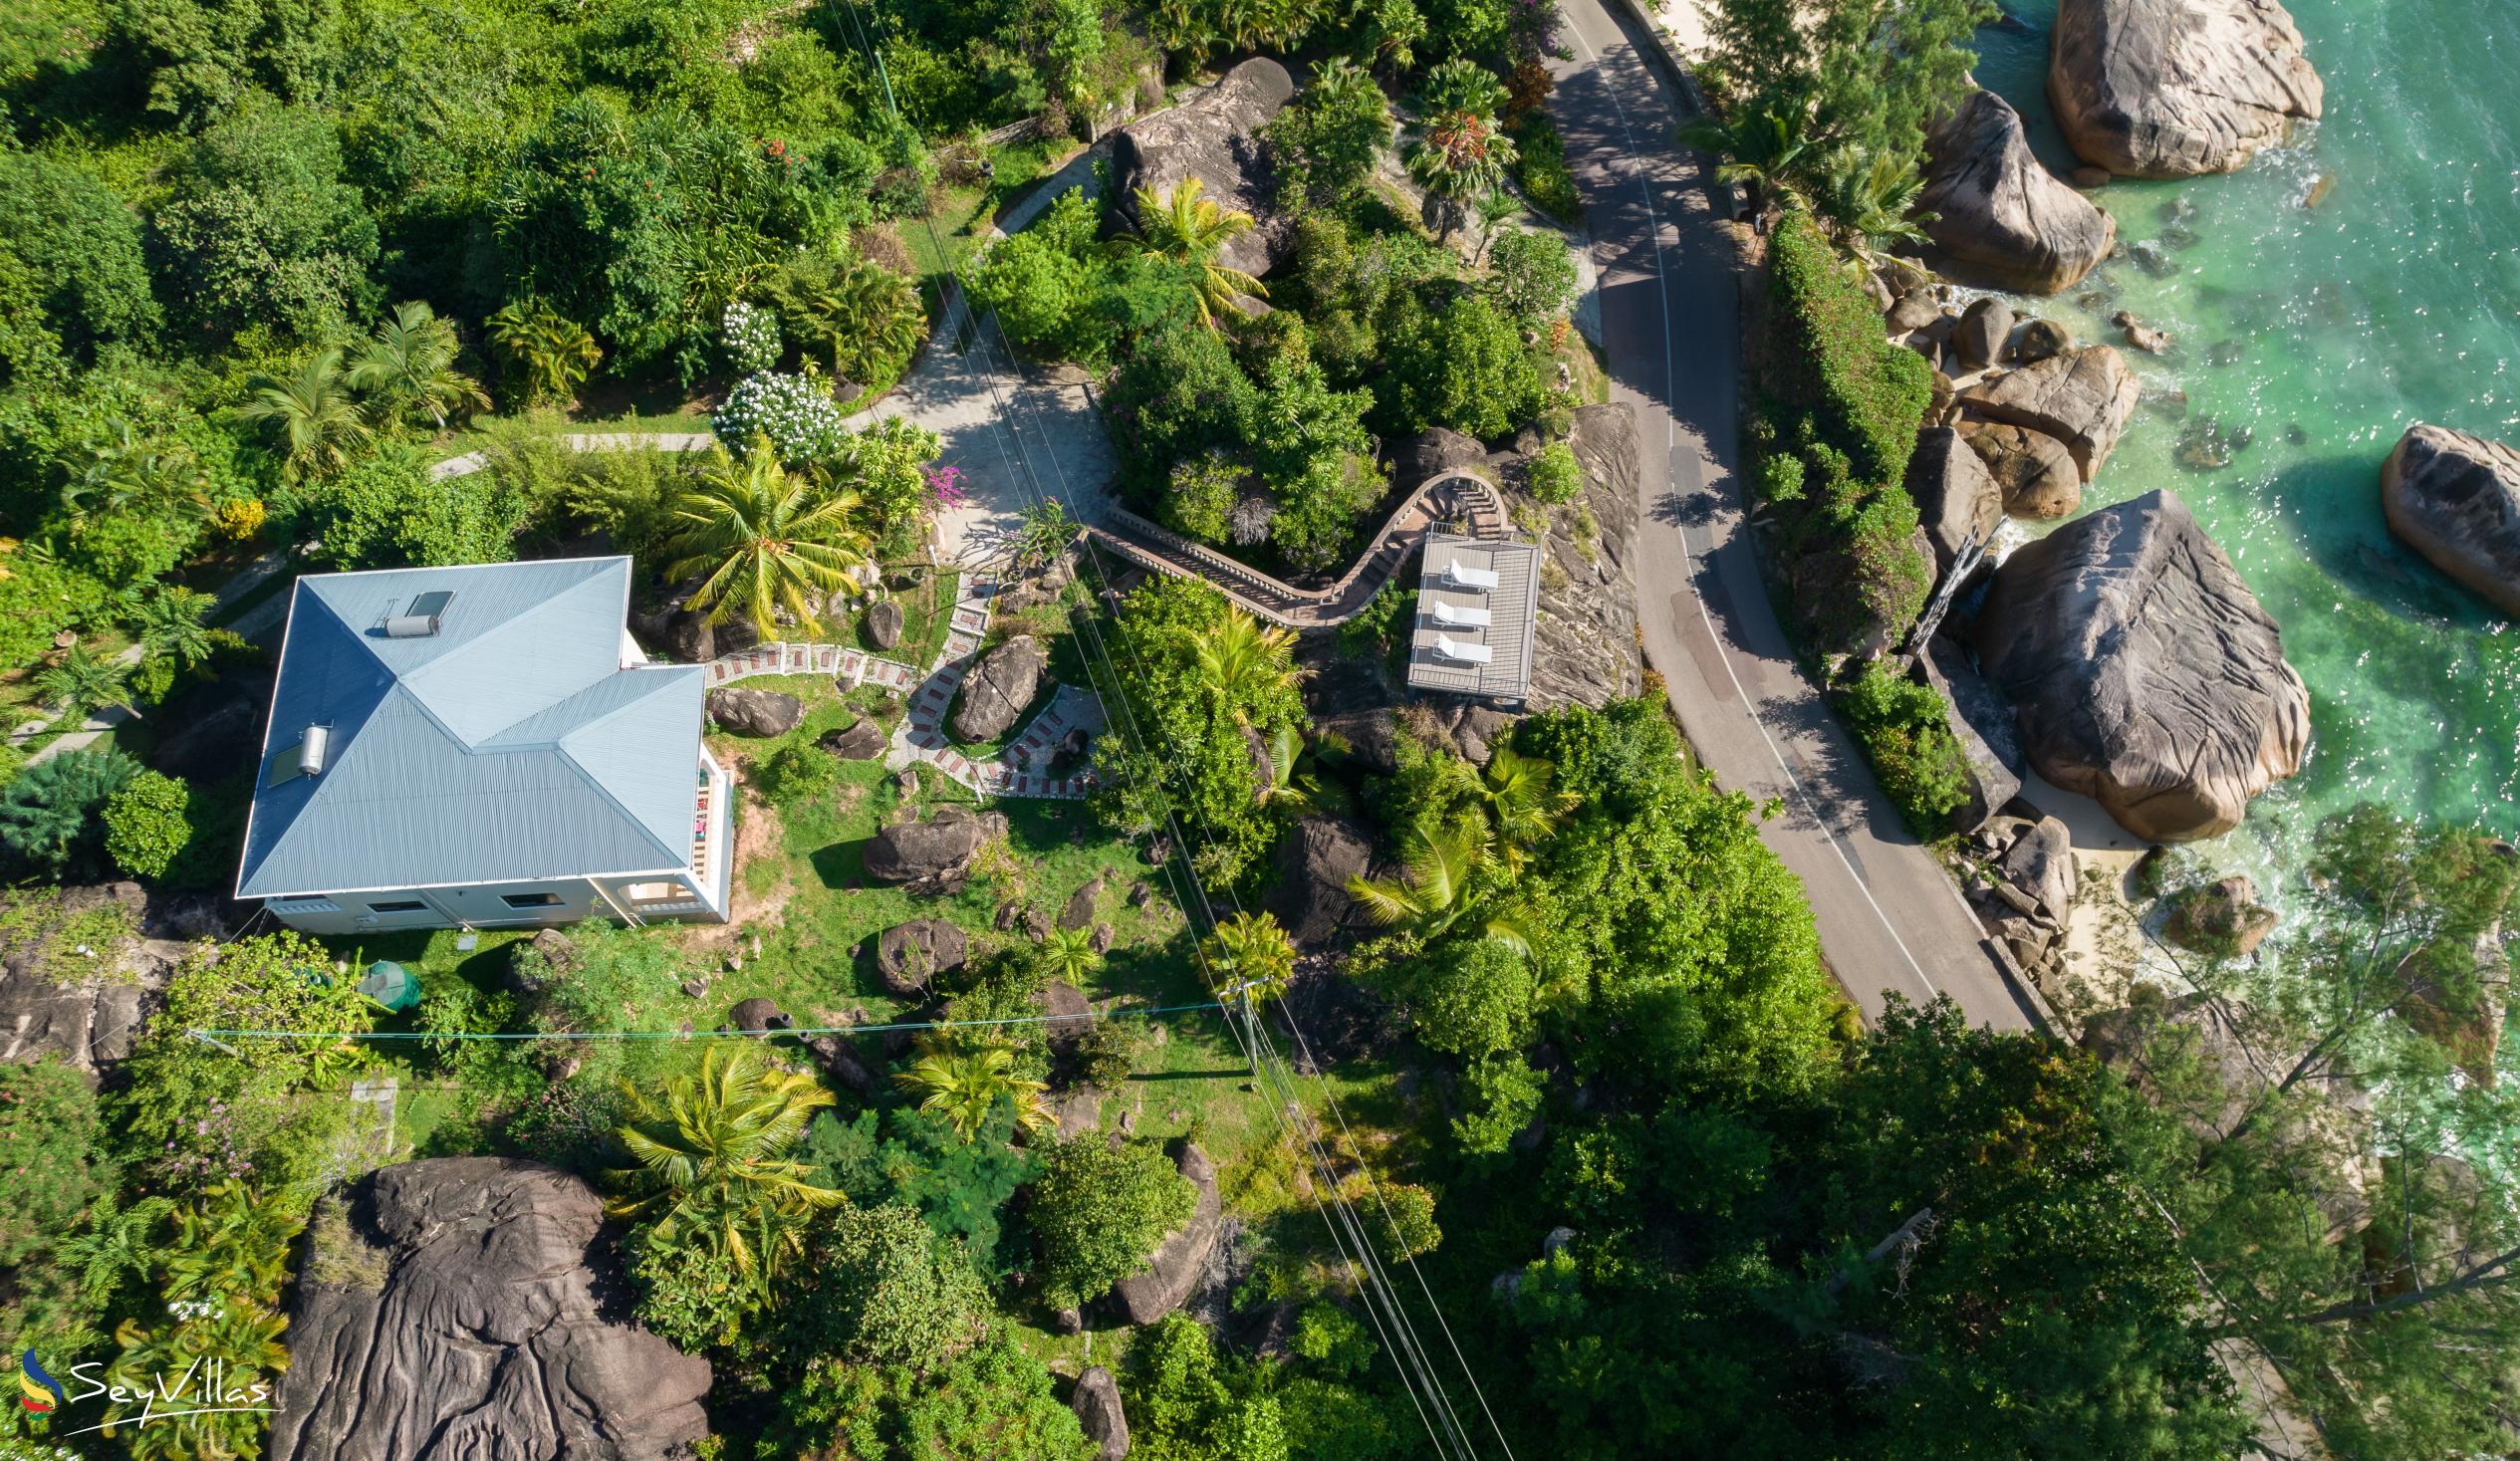 Photo 9: Jardin Marron - Outdoor area - Praslin (Seychelles)